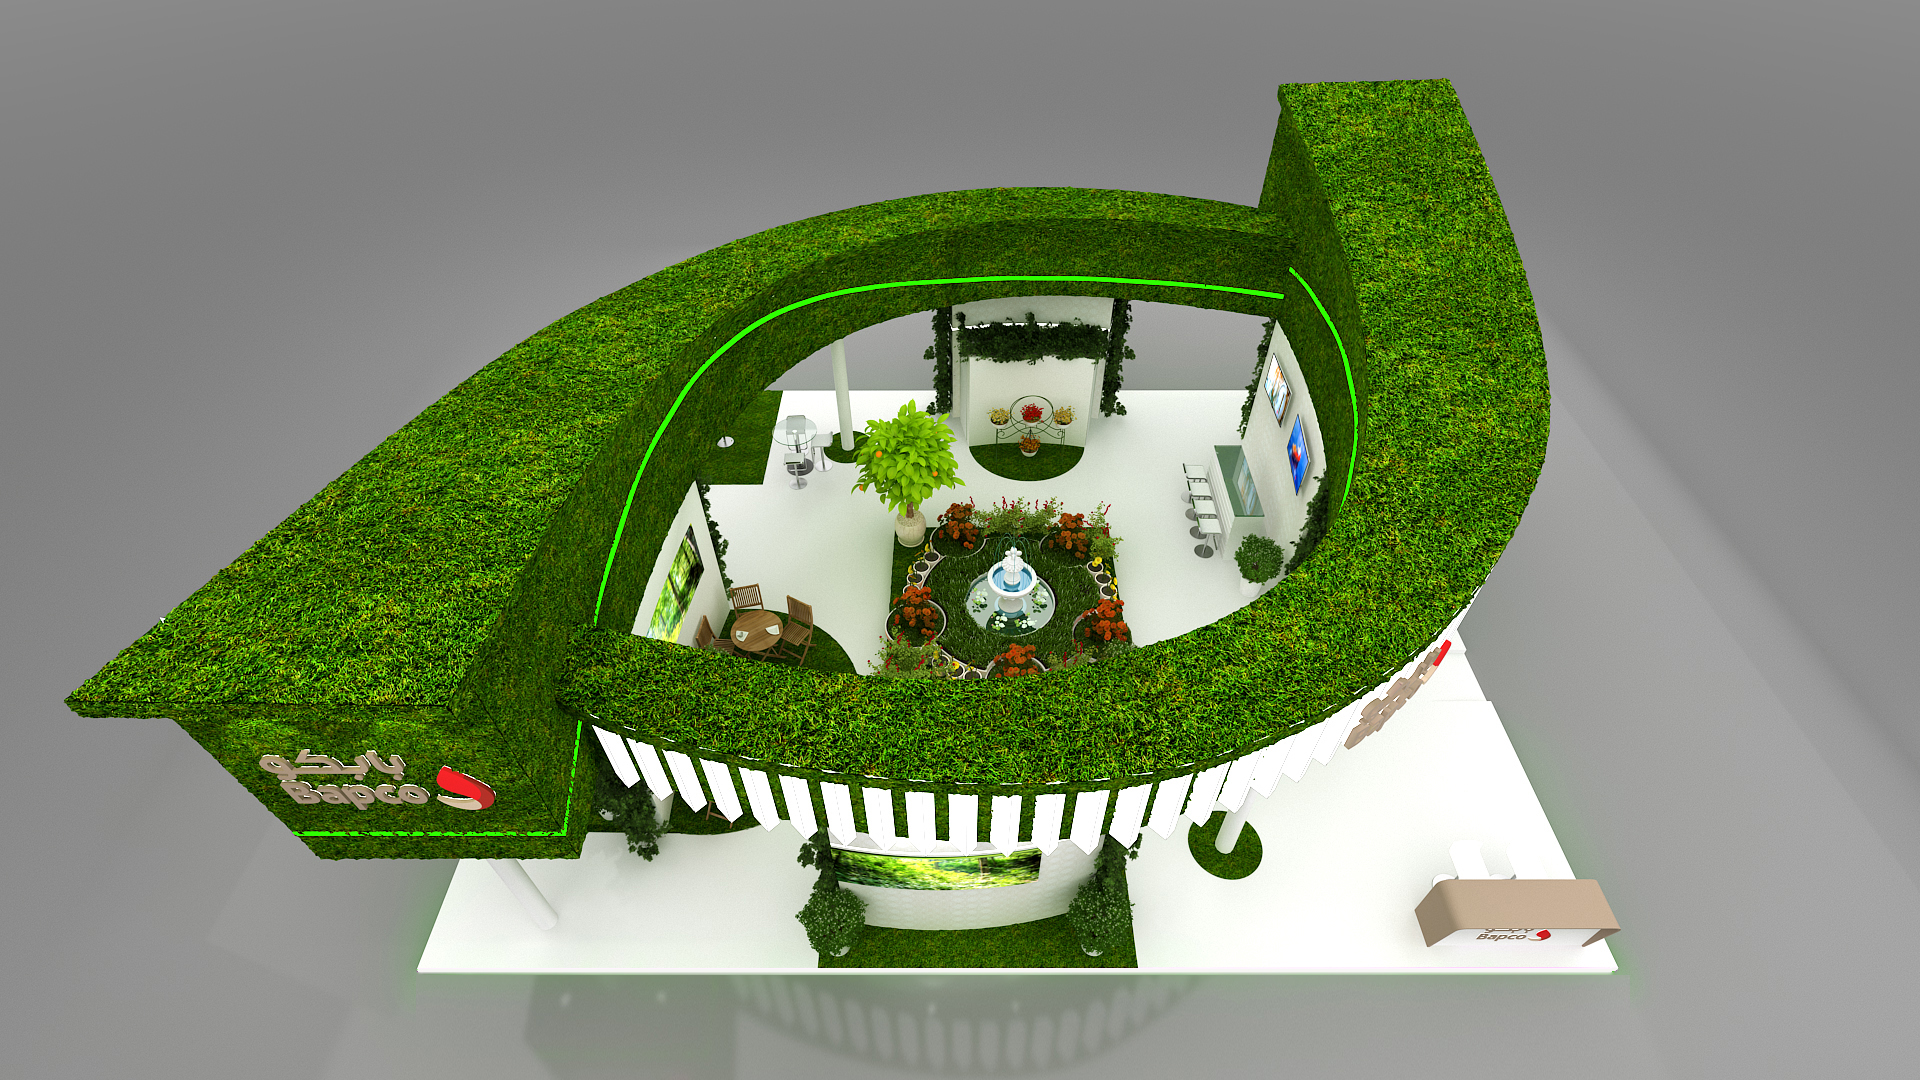 Conceptual Garden Show Design for - BAPCO-3